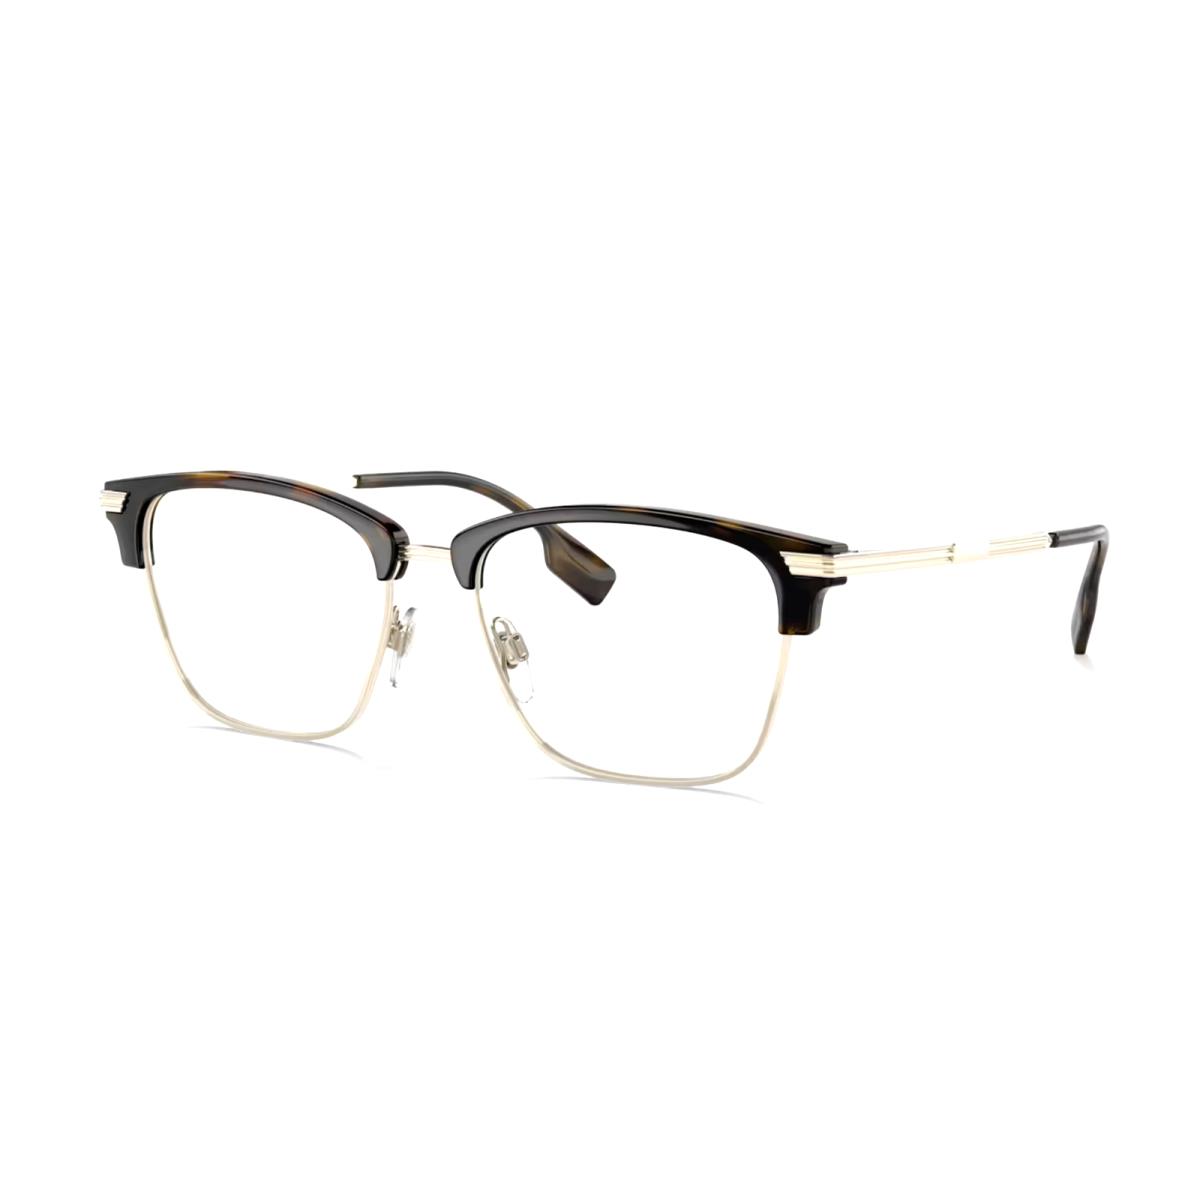 Burberry Pearce Eyeglasses B 2359 3002 53-17 145 Dark Tortoise Gold Frames